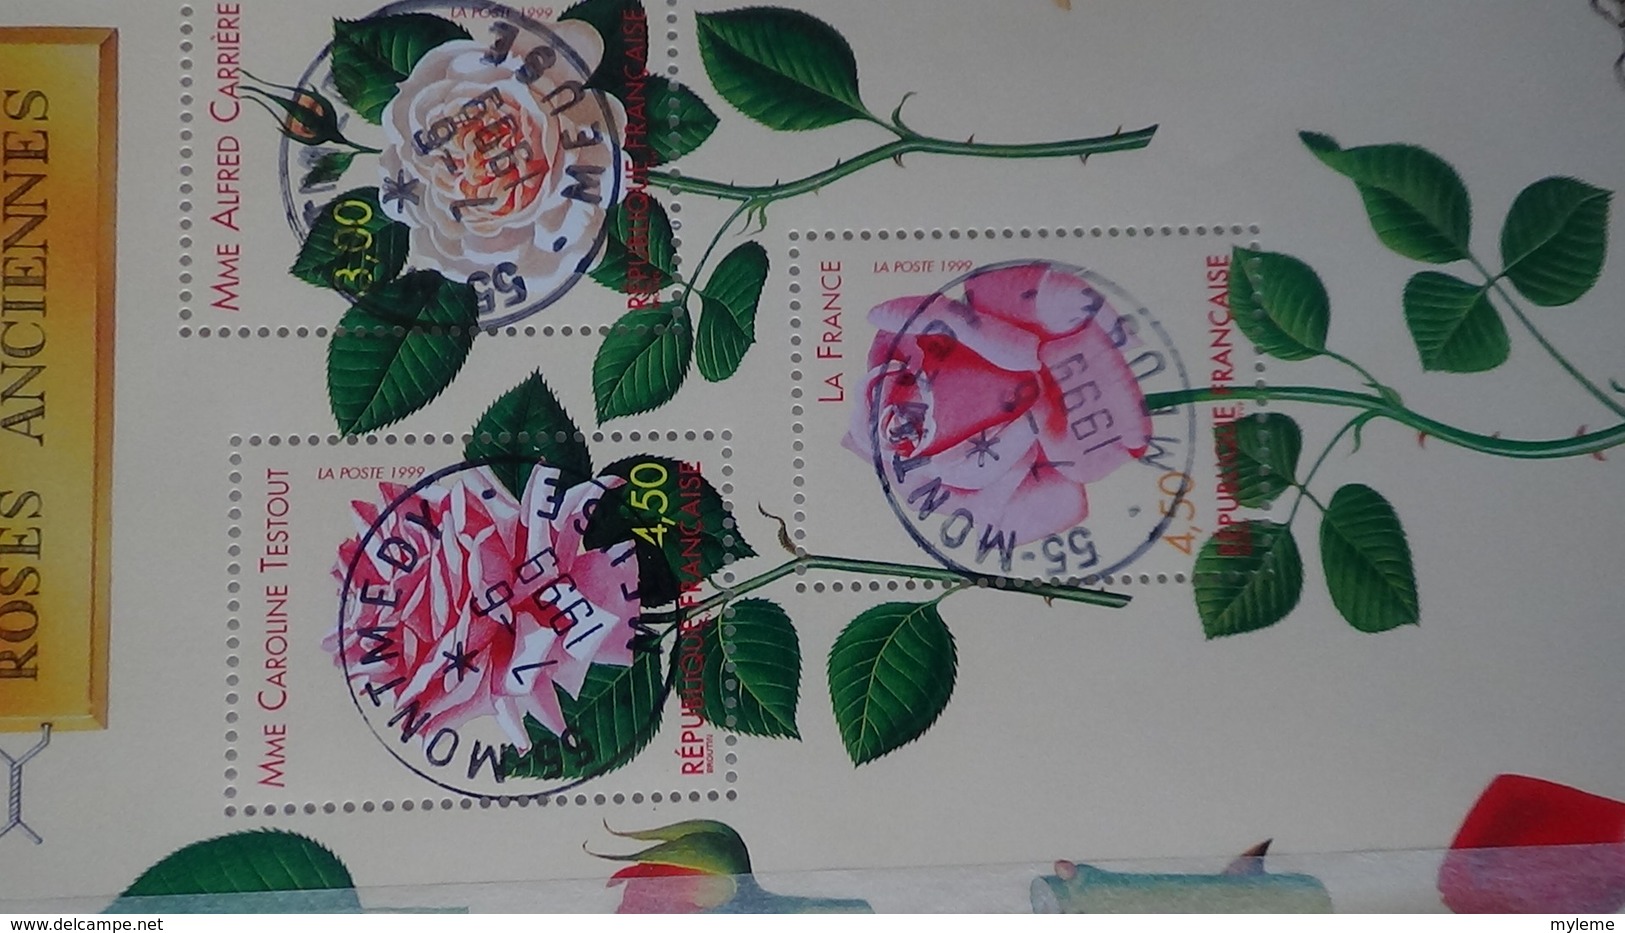 Collection de timbres, carnets, blocs de France avec oblitérations soignées (2 feuilles concorde avec 1 pli)